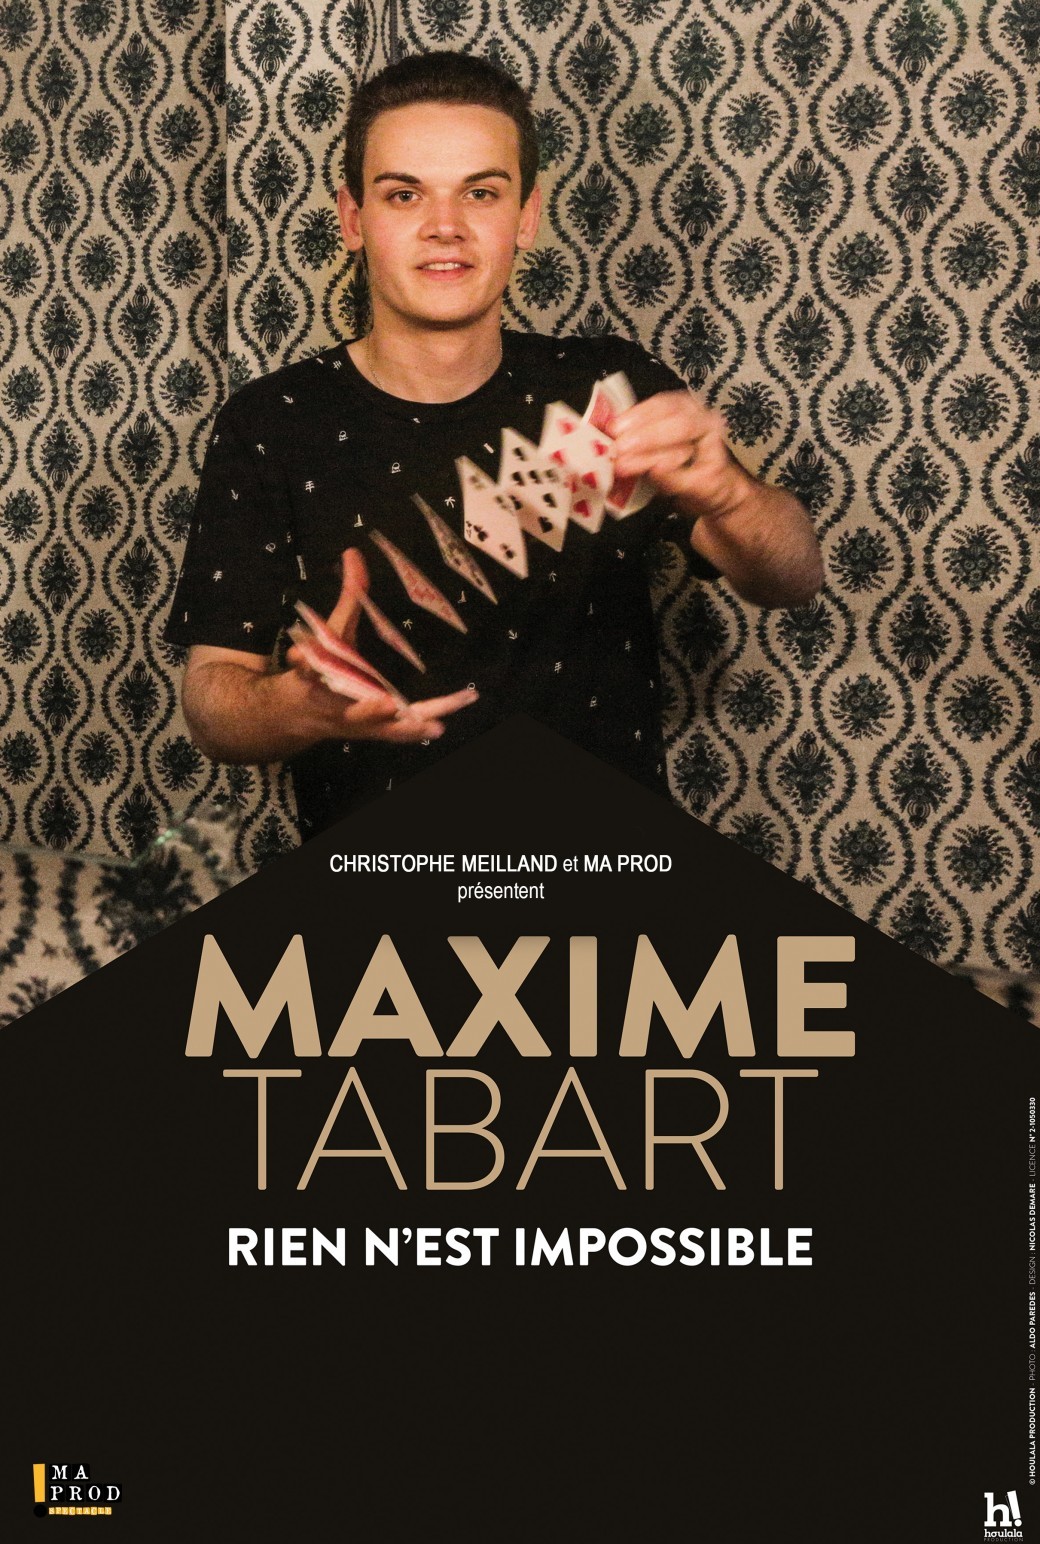 Maxime Tabart dans "Rien n'est impossible"